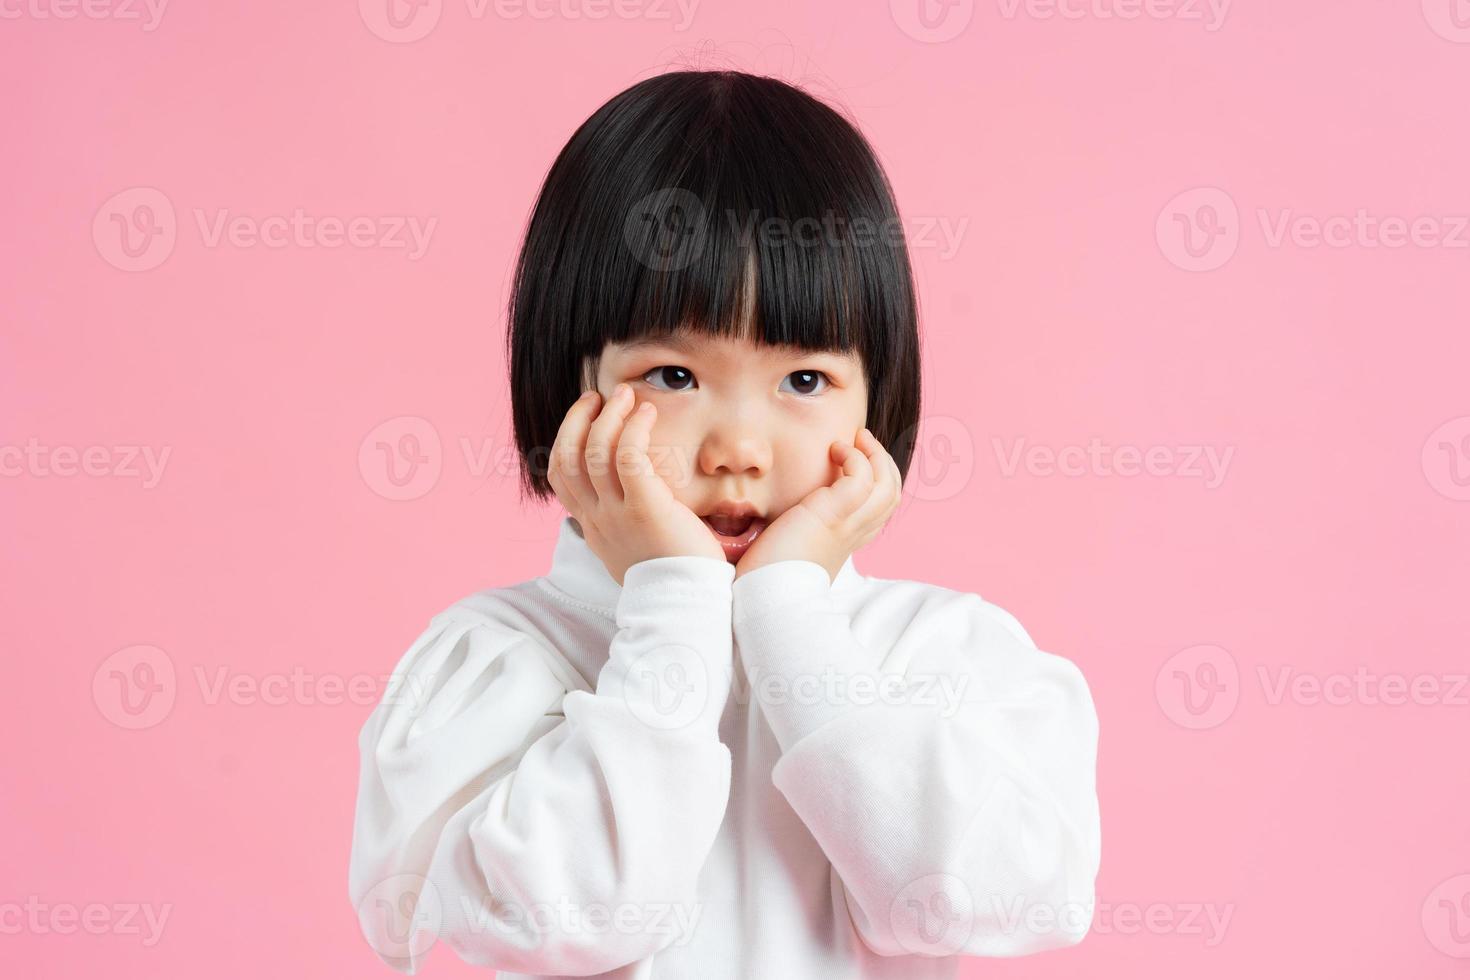 joli portrait de petite fille, isolé sur fond rose photo